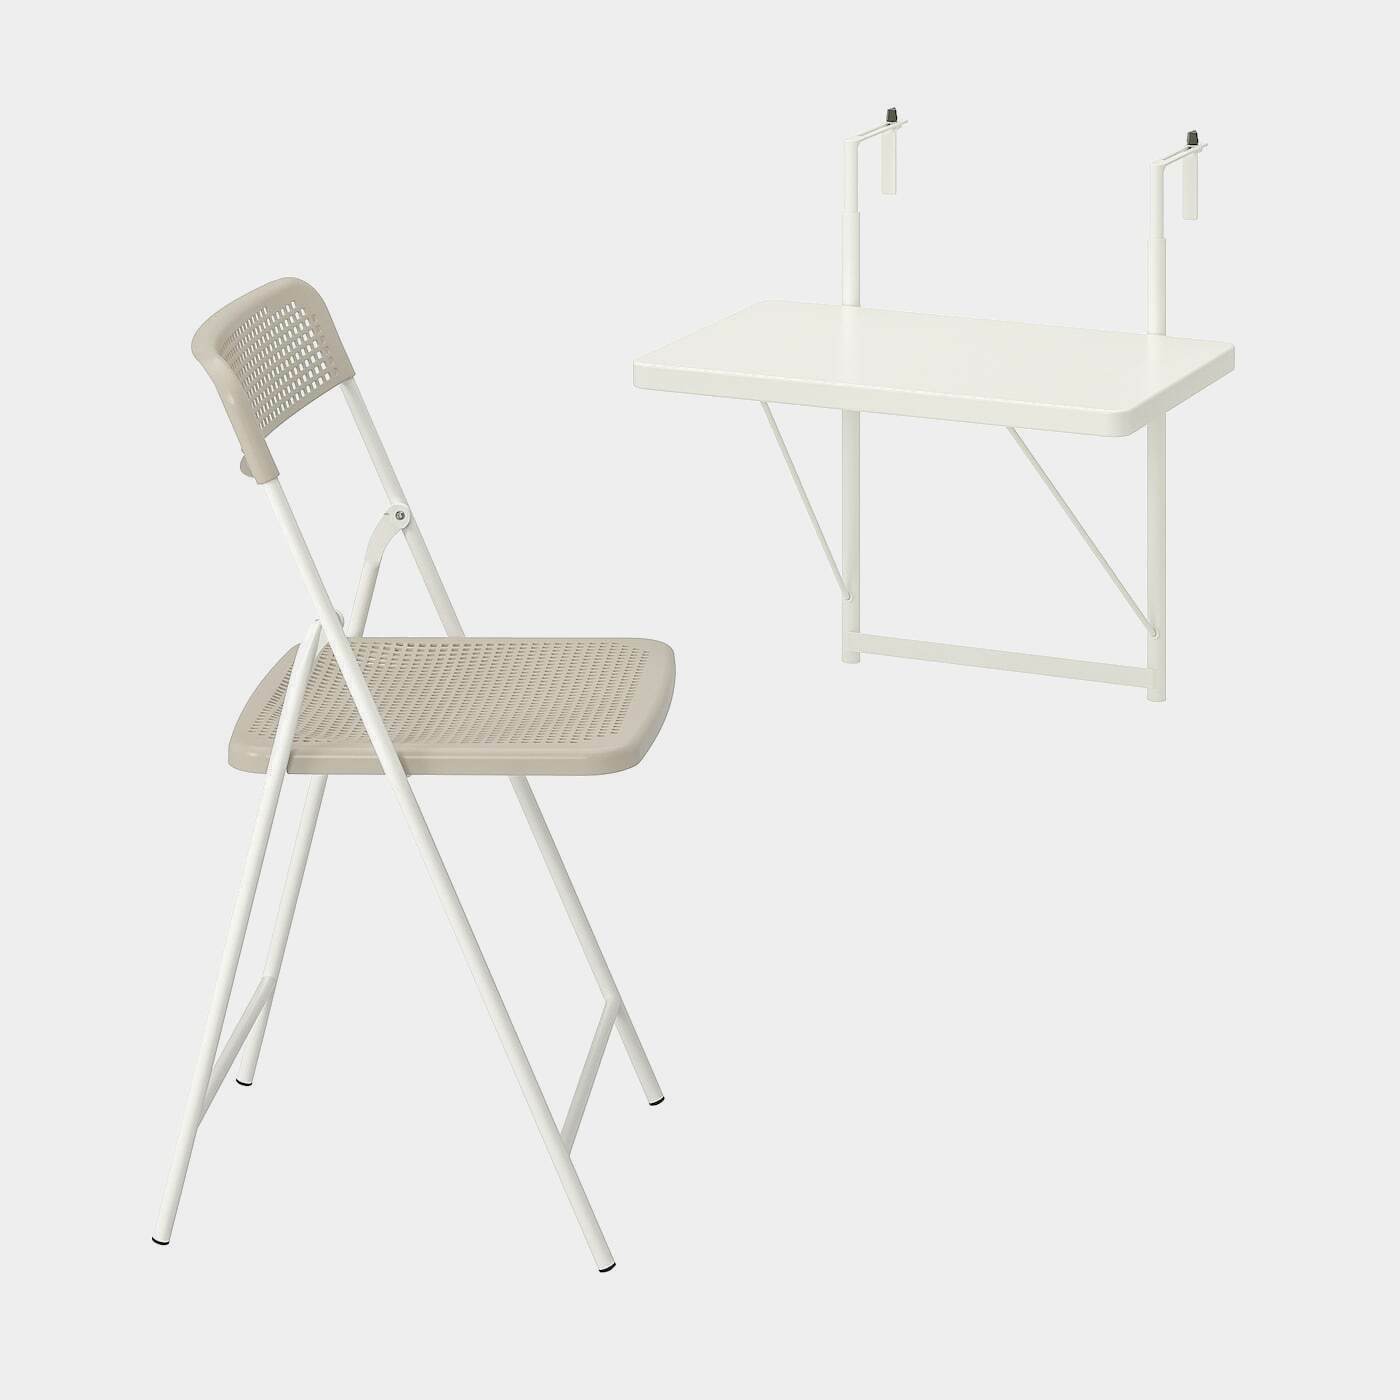 TORPARÖ Wandtisch + Klappstuhl/außen  -  - Möbel Ideen für dein Zuhause von Home Trends. Möbel Trends von Social Media Influencer für dein Skandi Zuhause.